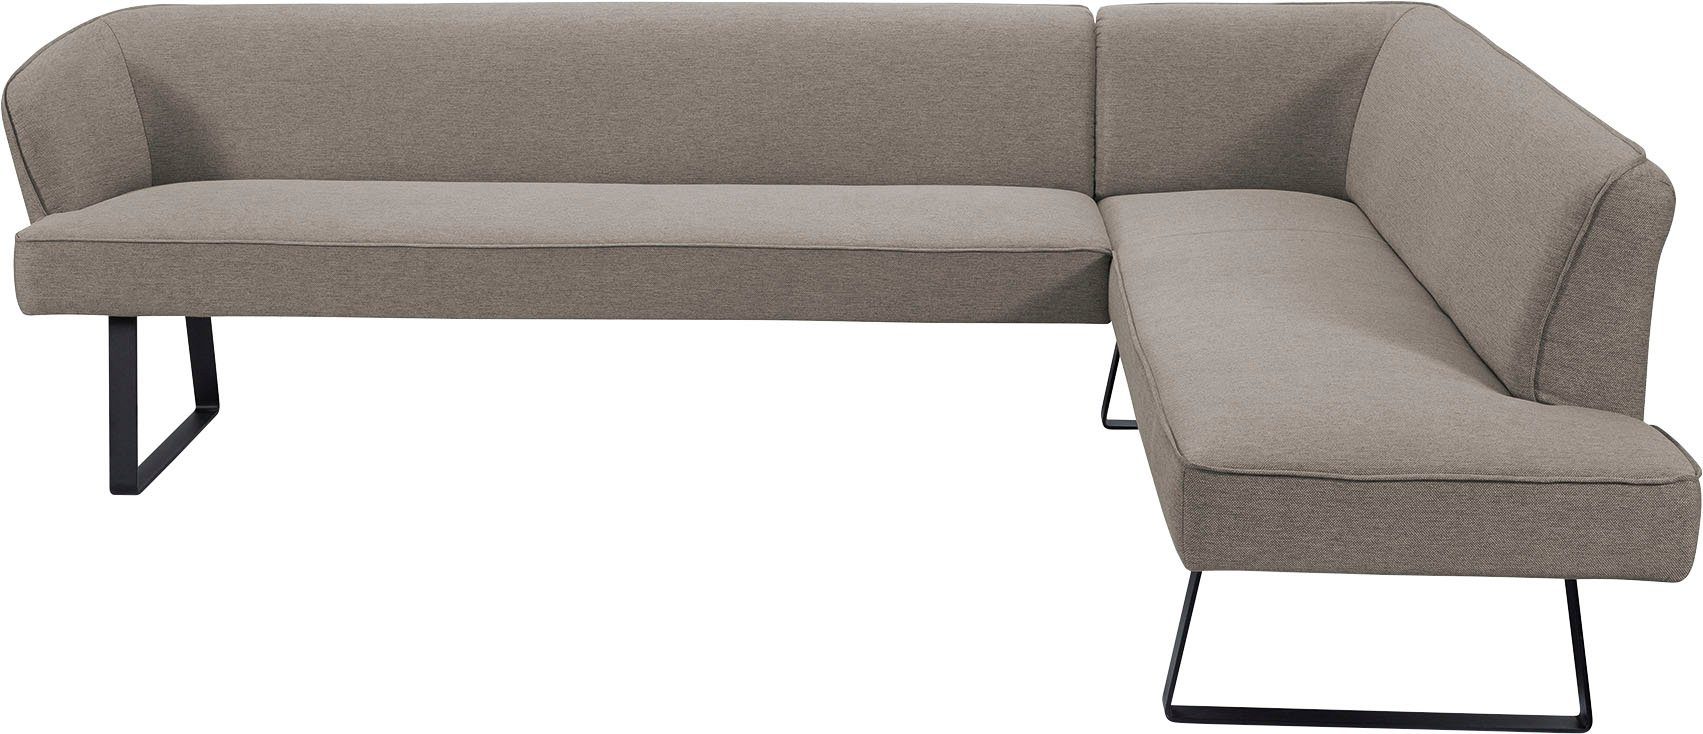 exxpo - sofa fashion Eckbank verschiedenen Americano, Qualitäten in und Metallfüßen, Keder mit Bezug